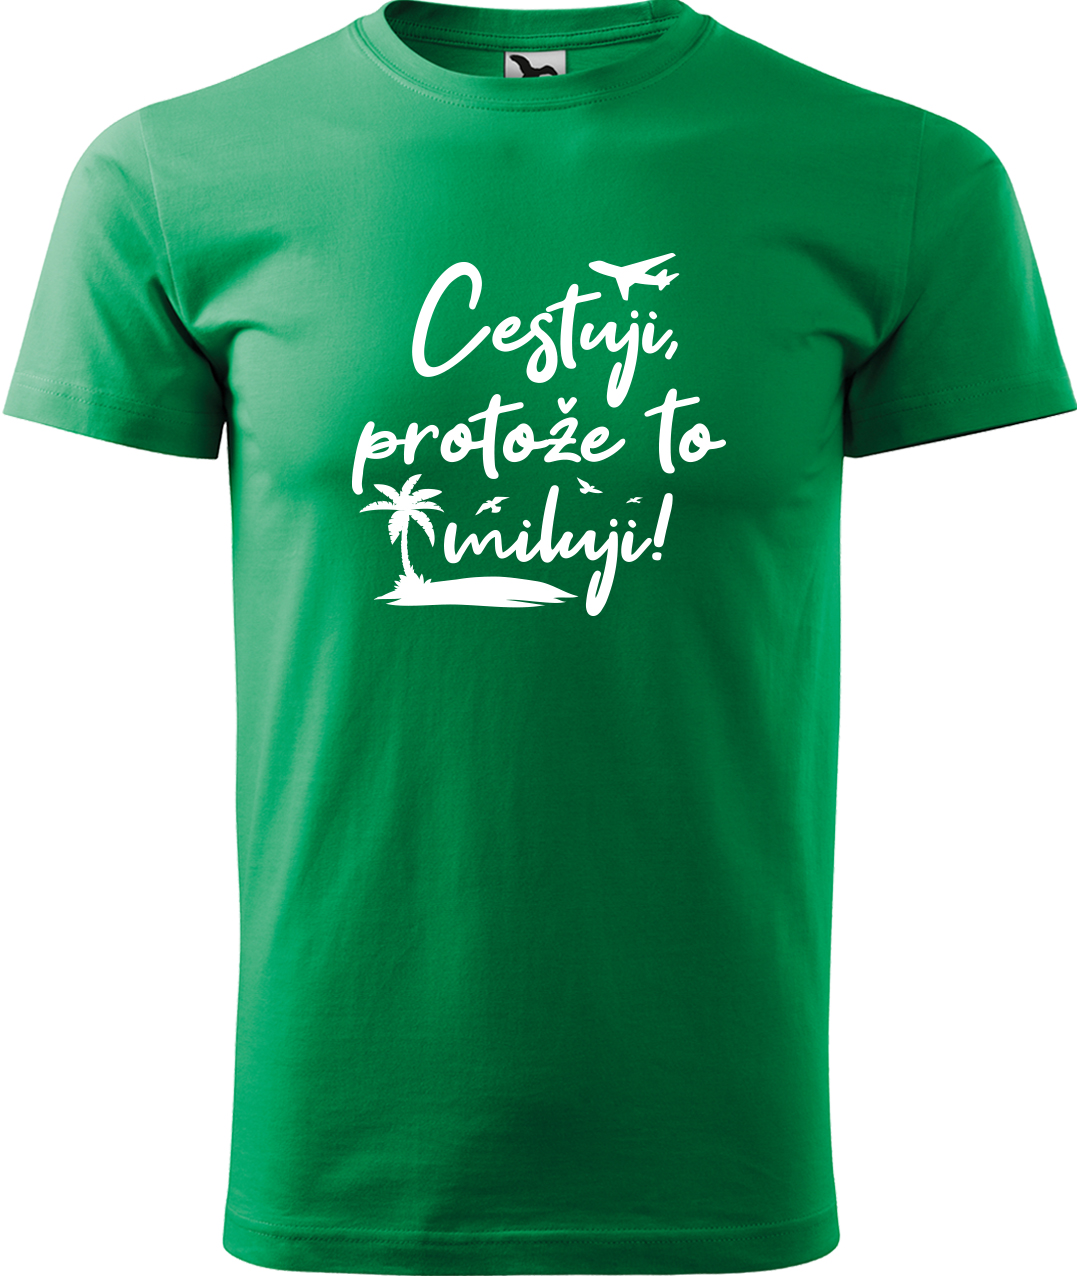 Pánské cestovatelské tričko - Cestuji, protože to miluji! Velikost: XL, Barva: Středně zelená (16), Střih: pánský